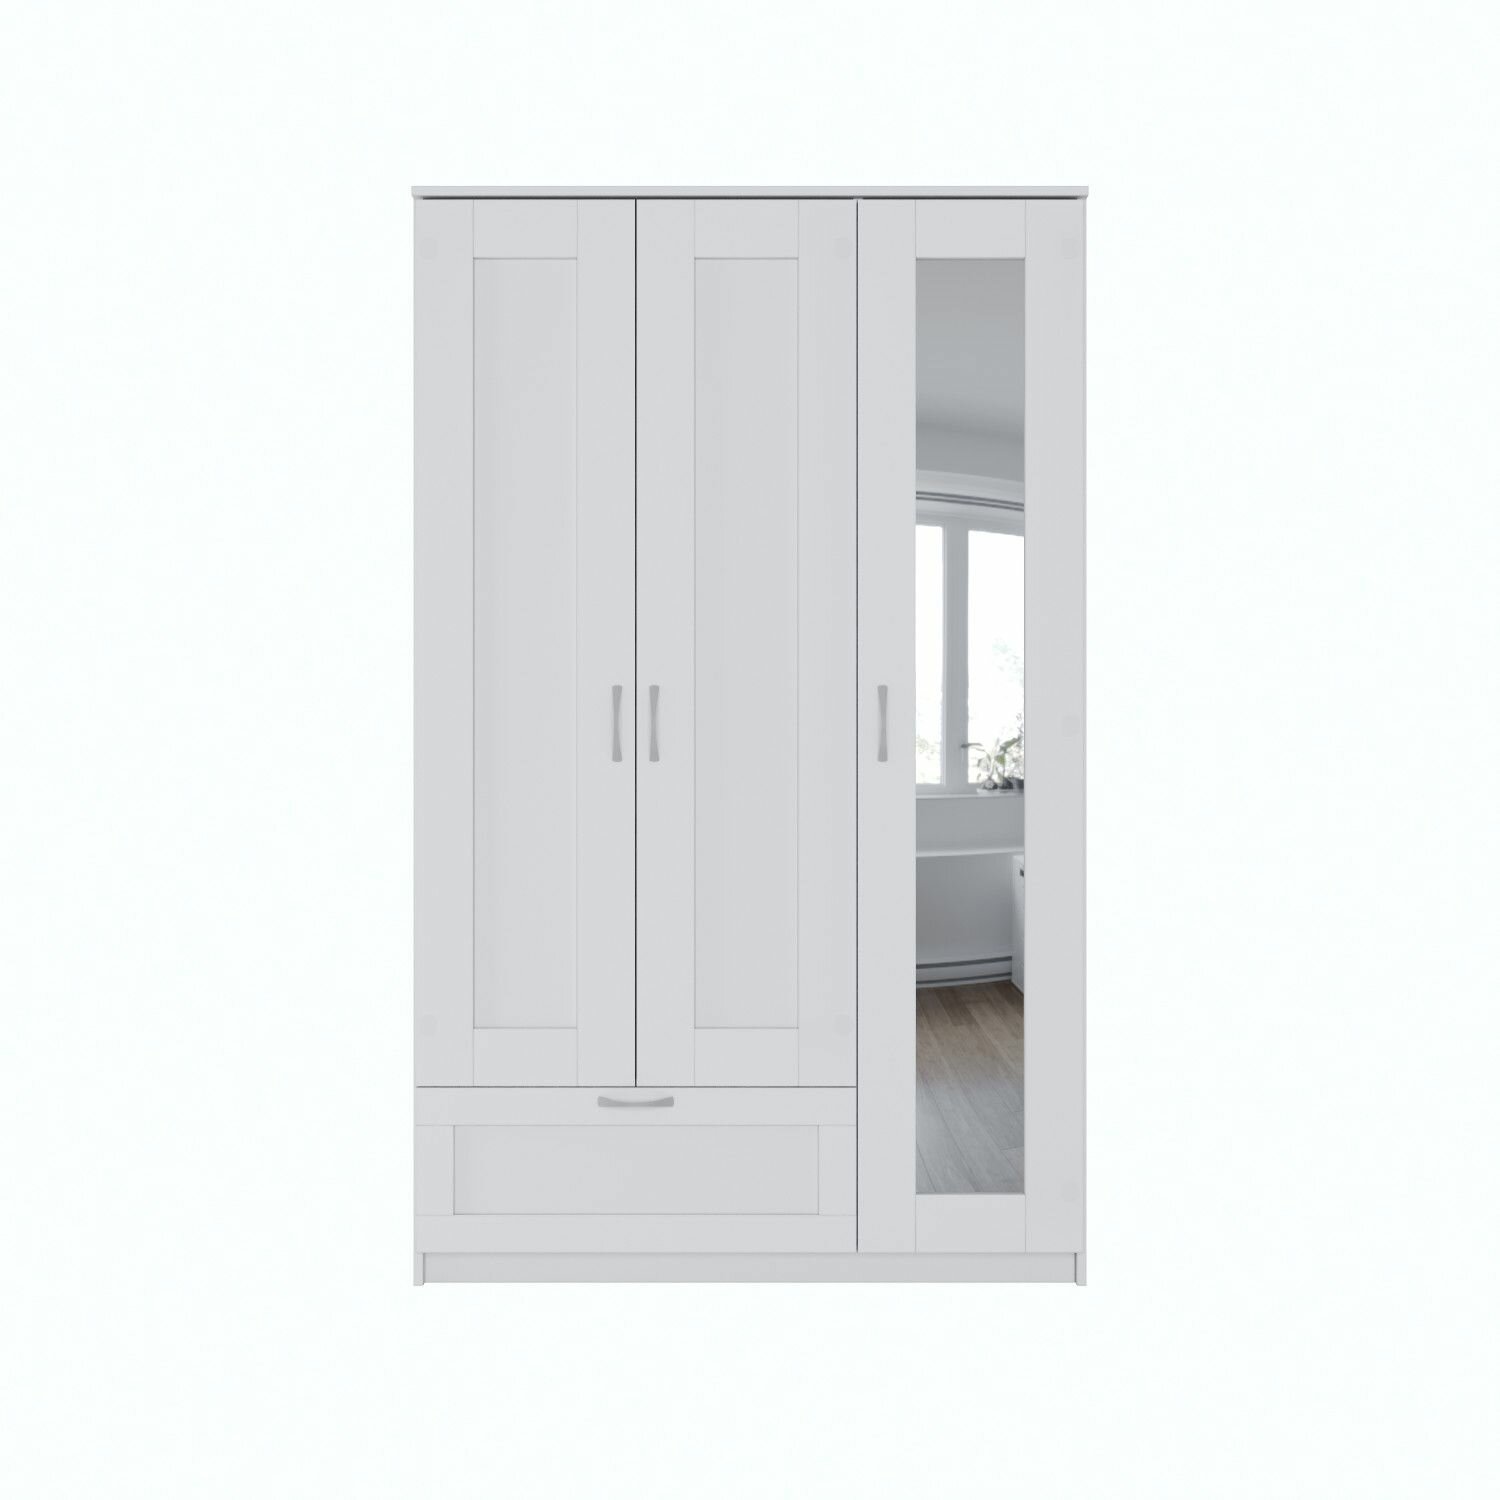 Бримнэс / сириус Шкаф шведский стандарт комбинированный 3 двери и 1 ящик белый